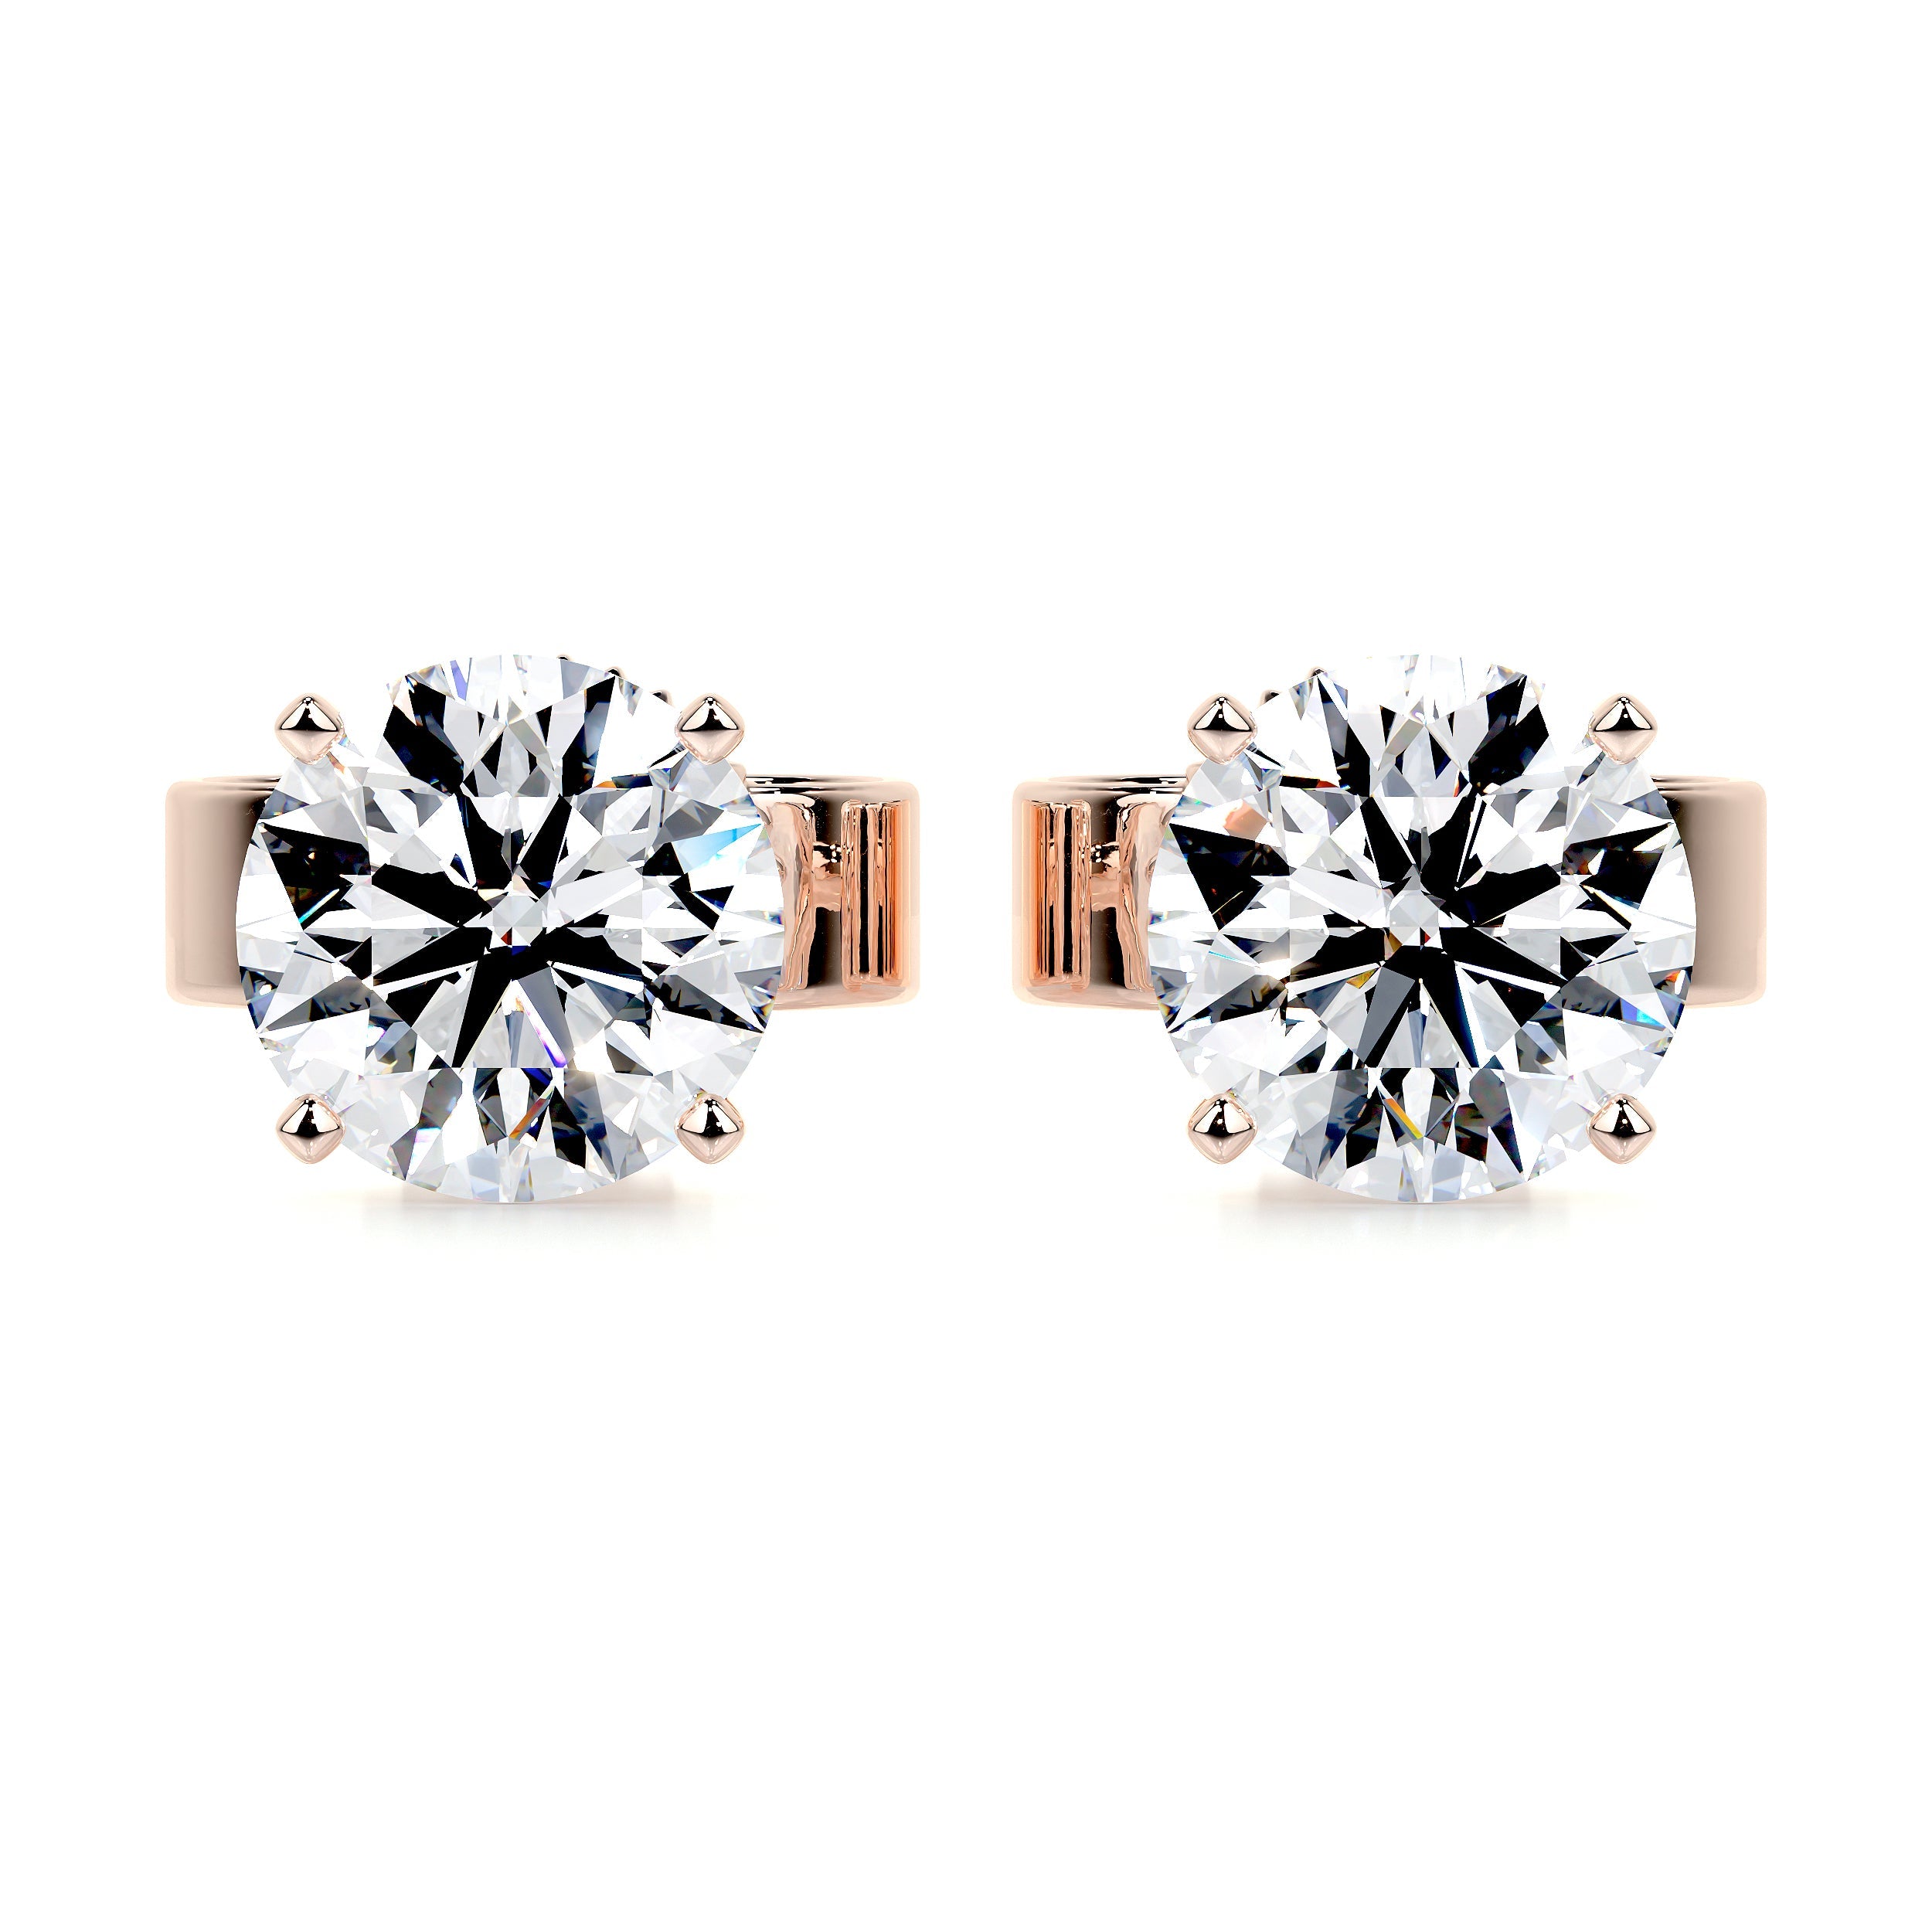 Allen Lab Grown Diamond Earrings   (5 Carat) -14K Rose Gold